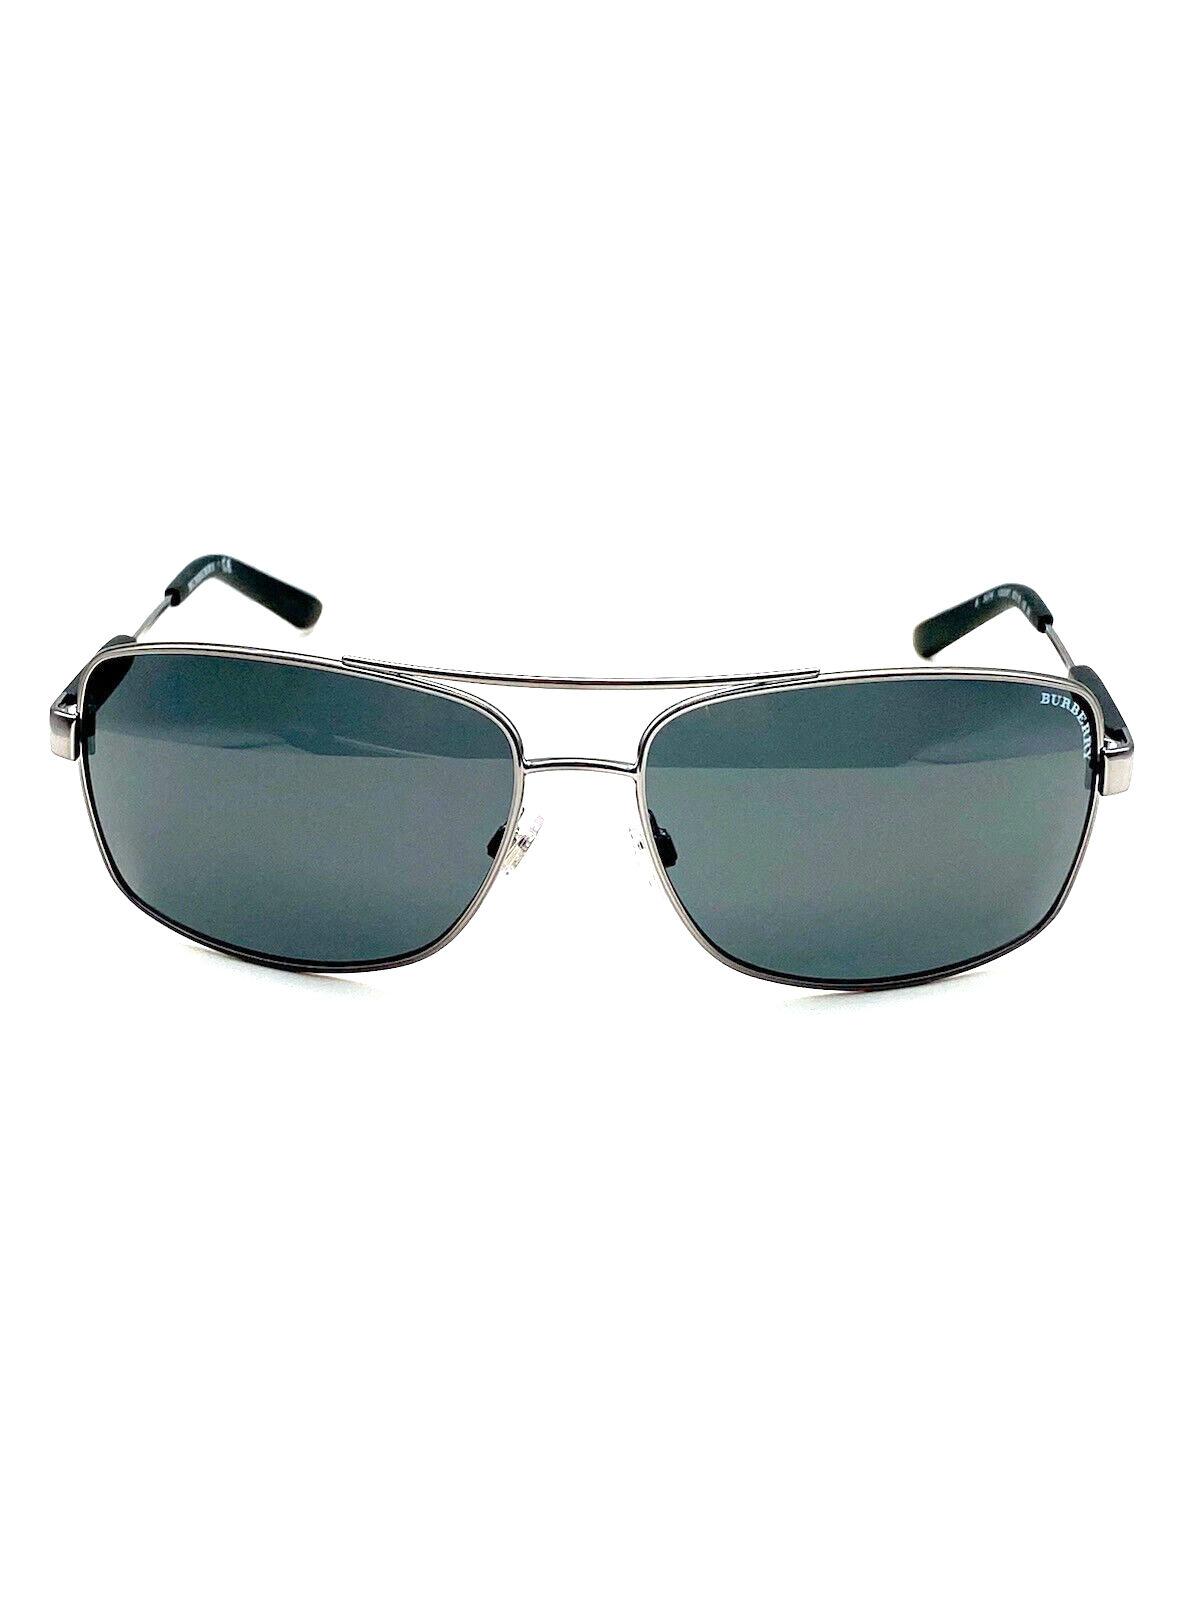 Burberry BE3074 100387 Gunmetal/Grey Pilot Full-Rim Men's Sunglasses